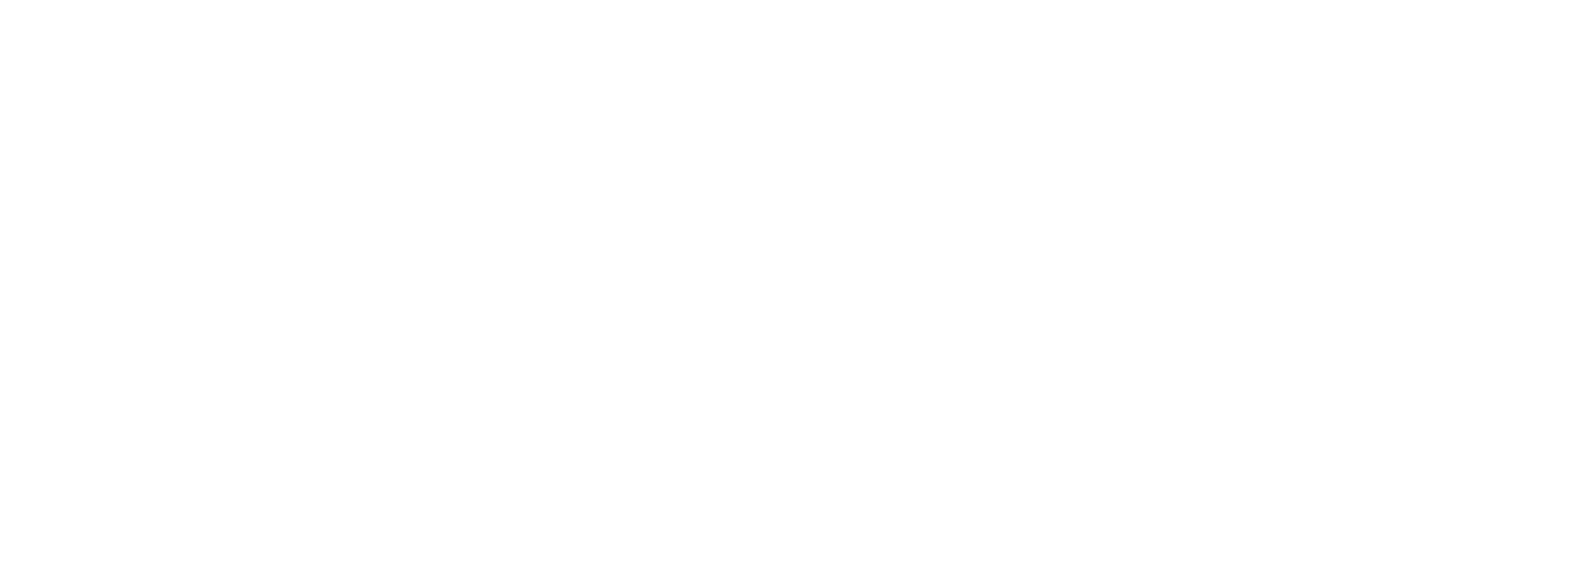 D'Ieteren Group logo grand pour les fonds sombres (PNG transparent)